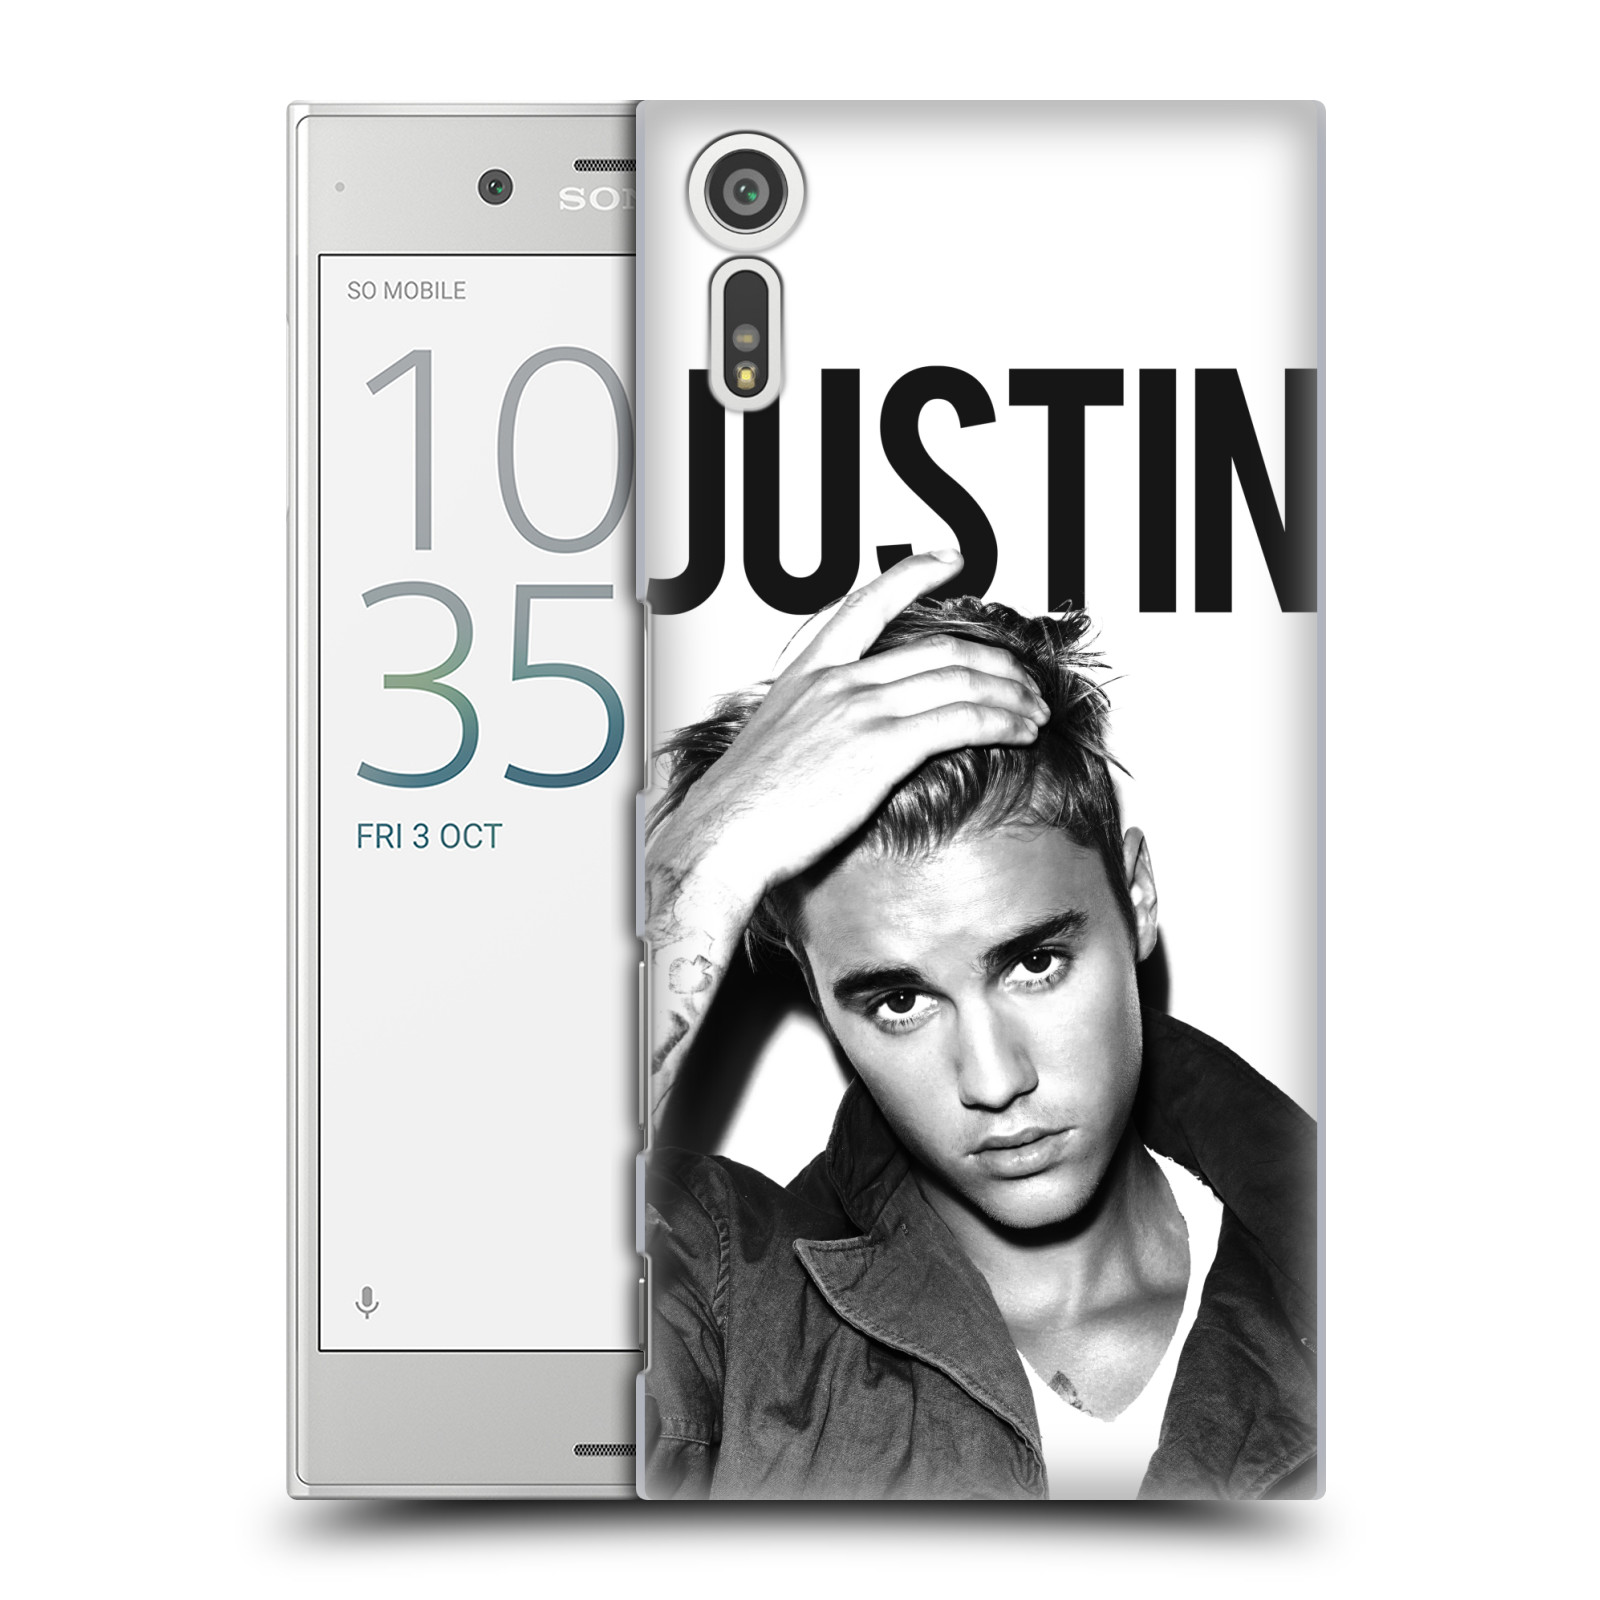 HEAD CASE plastový obal na mobil Sony Xperia XZ Justin Bieber foto Purpose černá a bílá